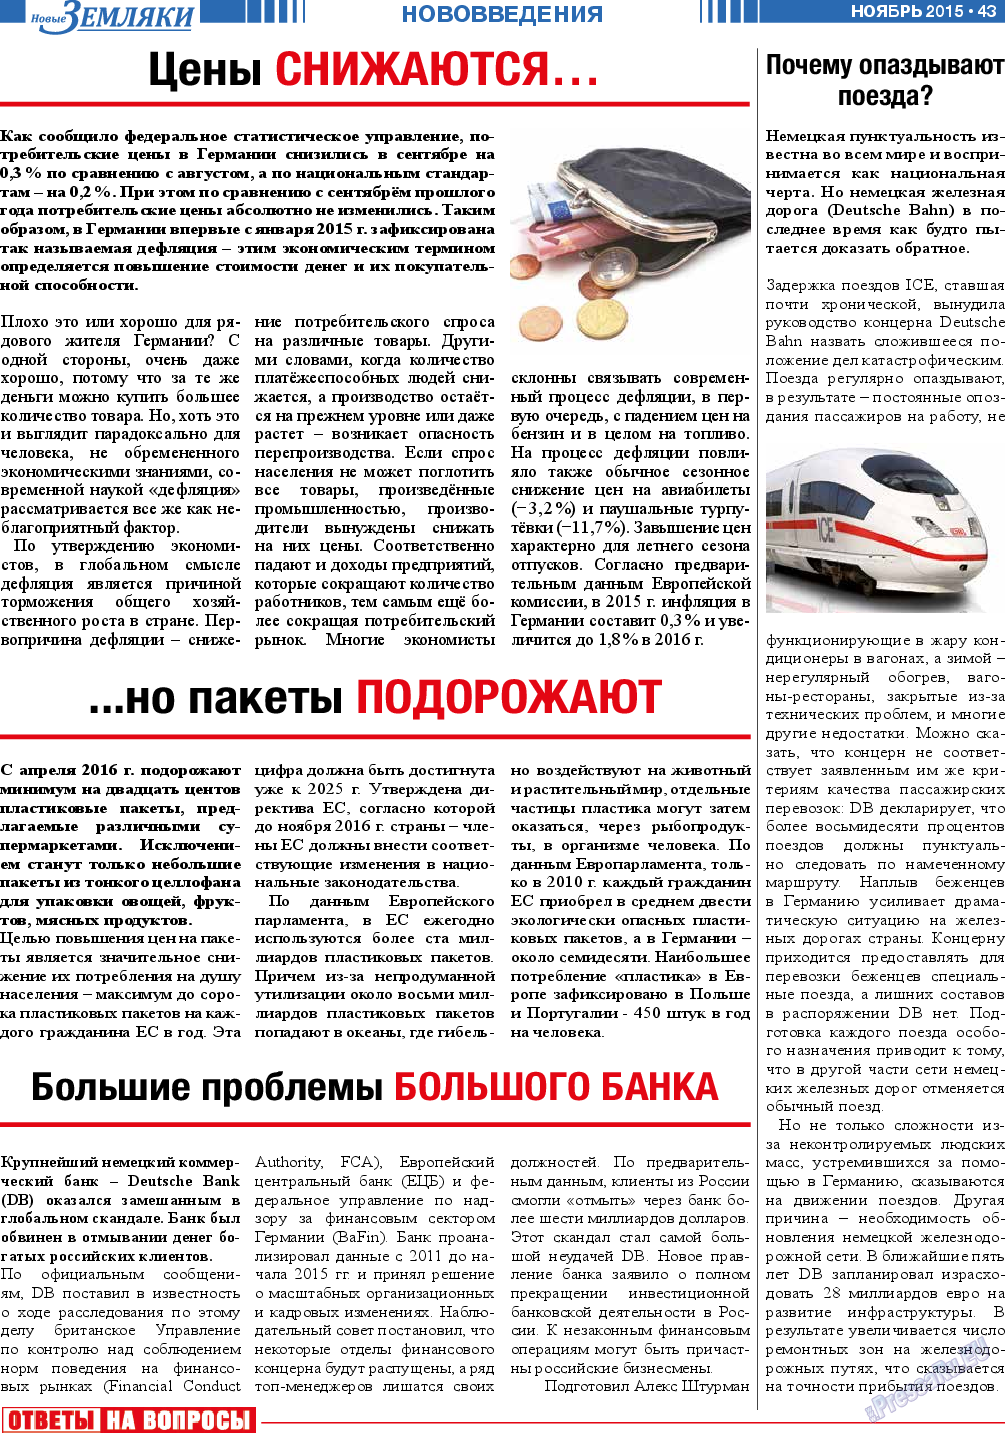 Новые Земляки, газета. 2015 №11 стр.43